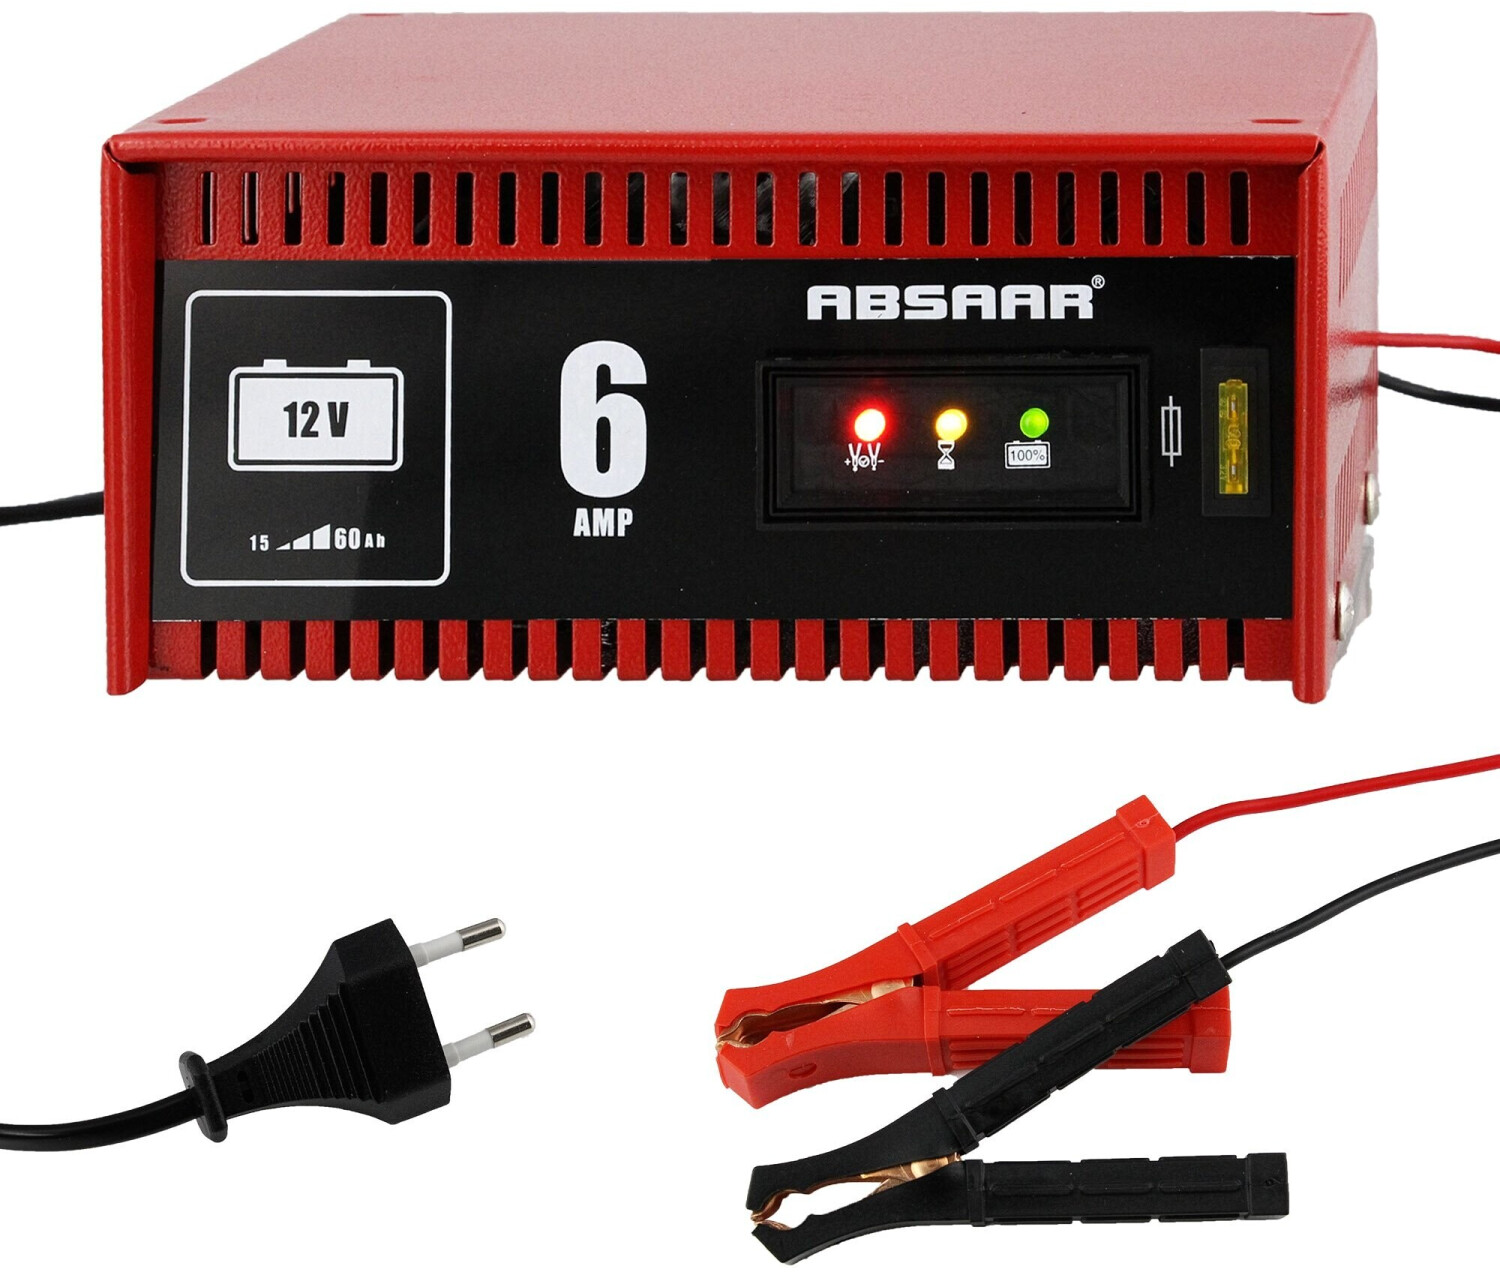 ABSAAR Batterieladegerät PRO 6